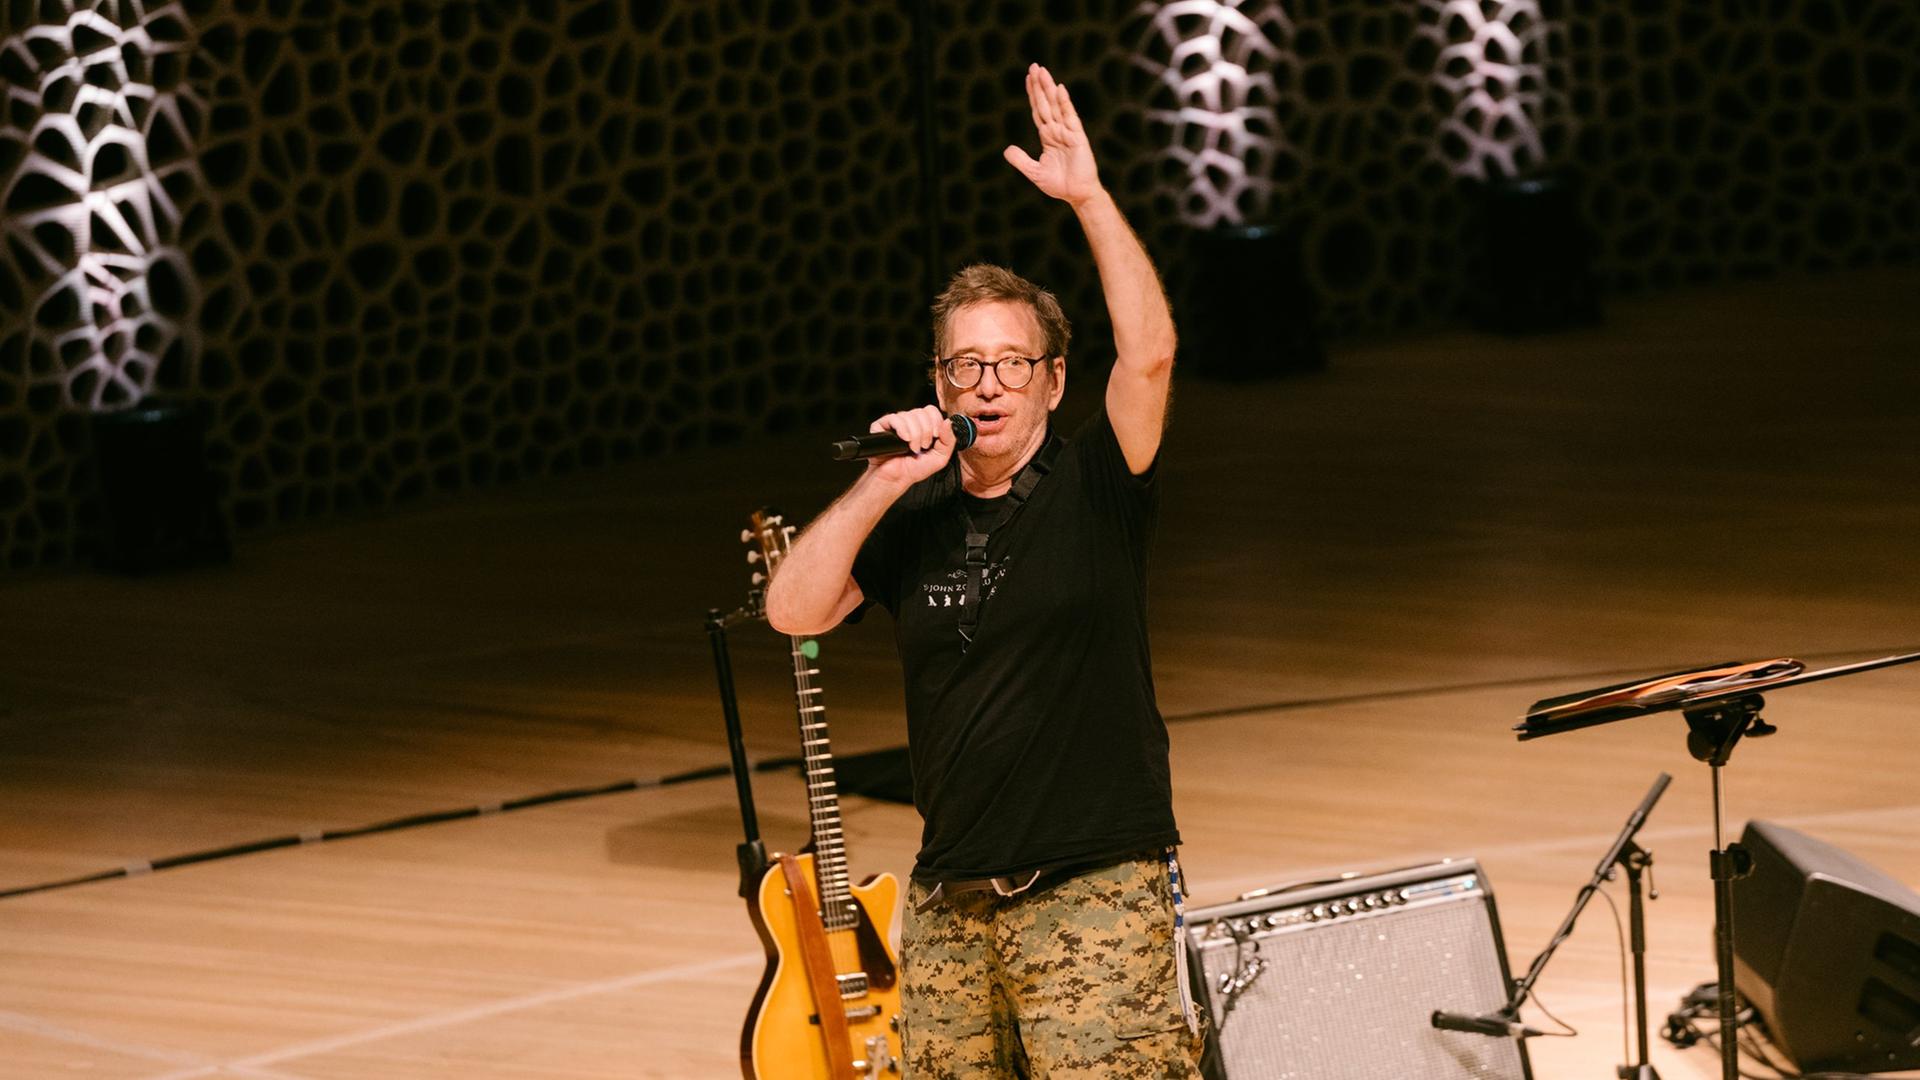 Ein Mann mit Brille  und lockerer Kleidung steht auf einer weiten Bühne, spricht in eine Mikrofon und hebt dabei eine Hand.